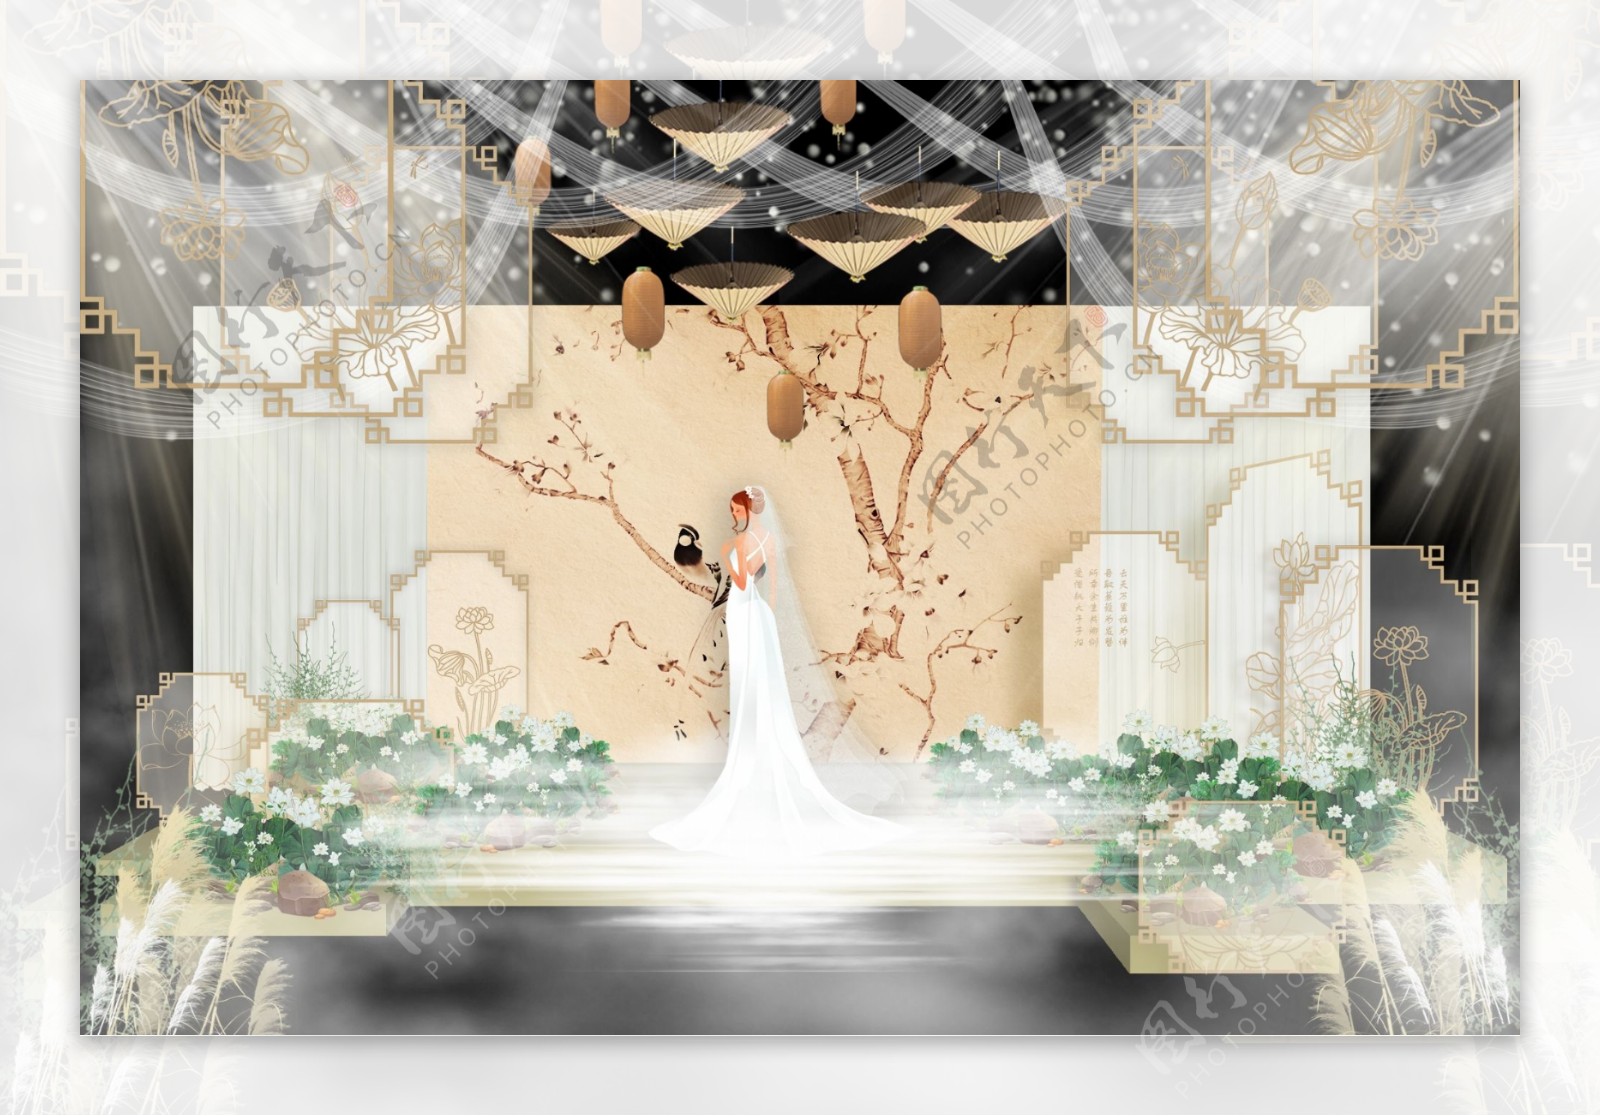 新中式婚礼中心舞台效果图